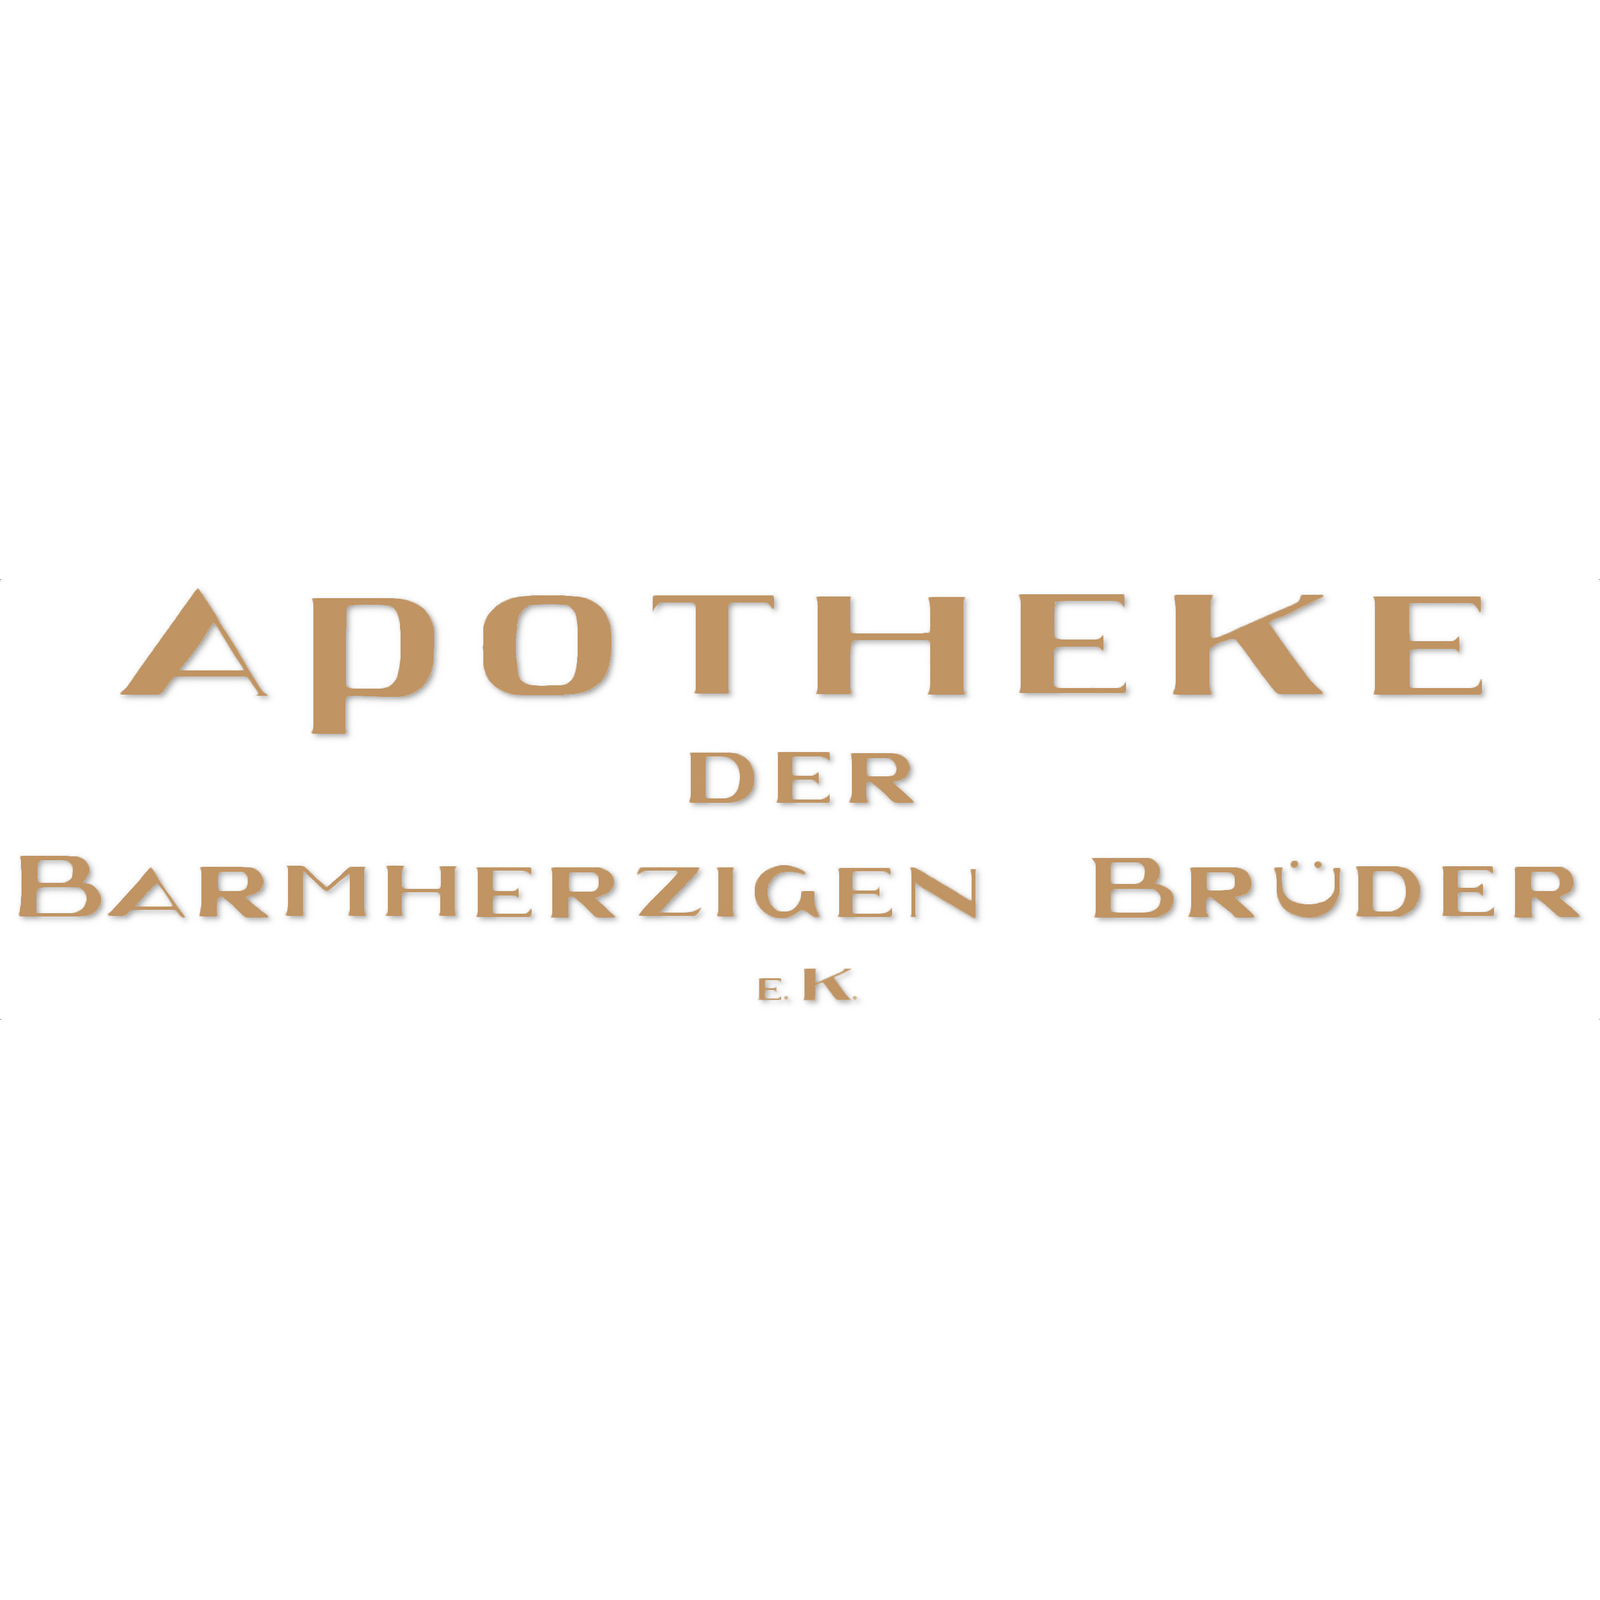 Apotheke der Barmherzigen Brüder e. K. in Neuburg an der Donau - Logo